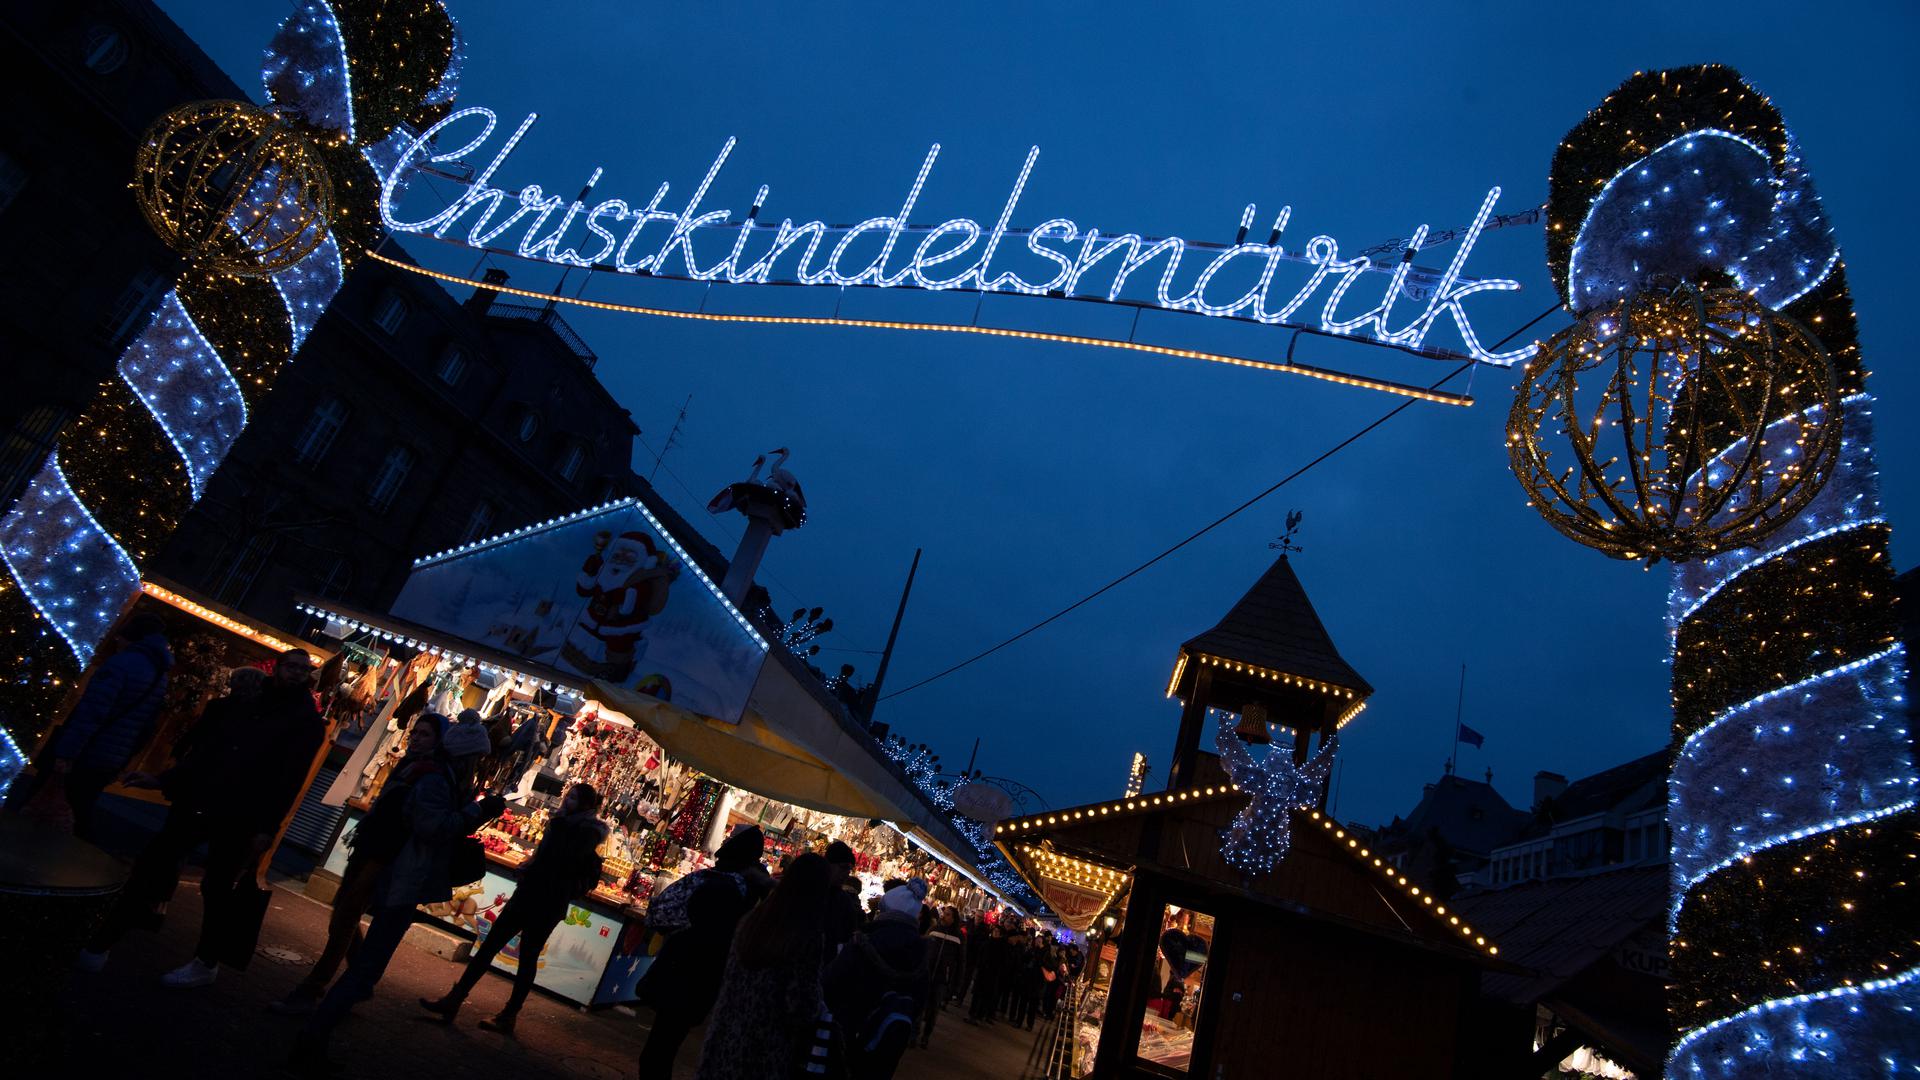 Das Wort „Christkindelsmärik“ prangt in großen beleuchteten Buchstaben an einem Zugang zum Weihnachtsmarkt.